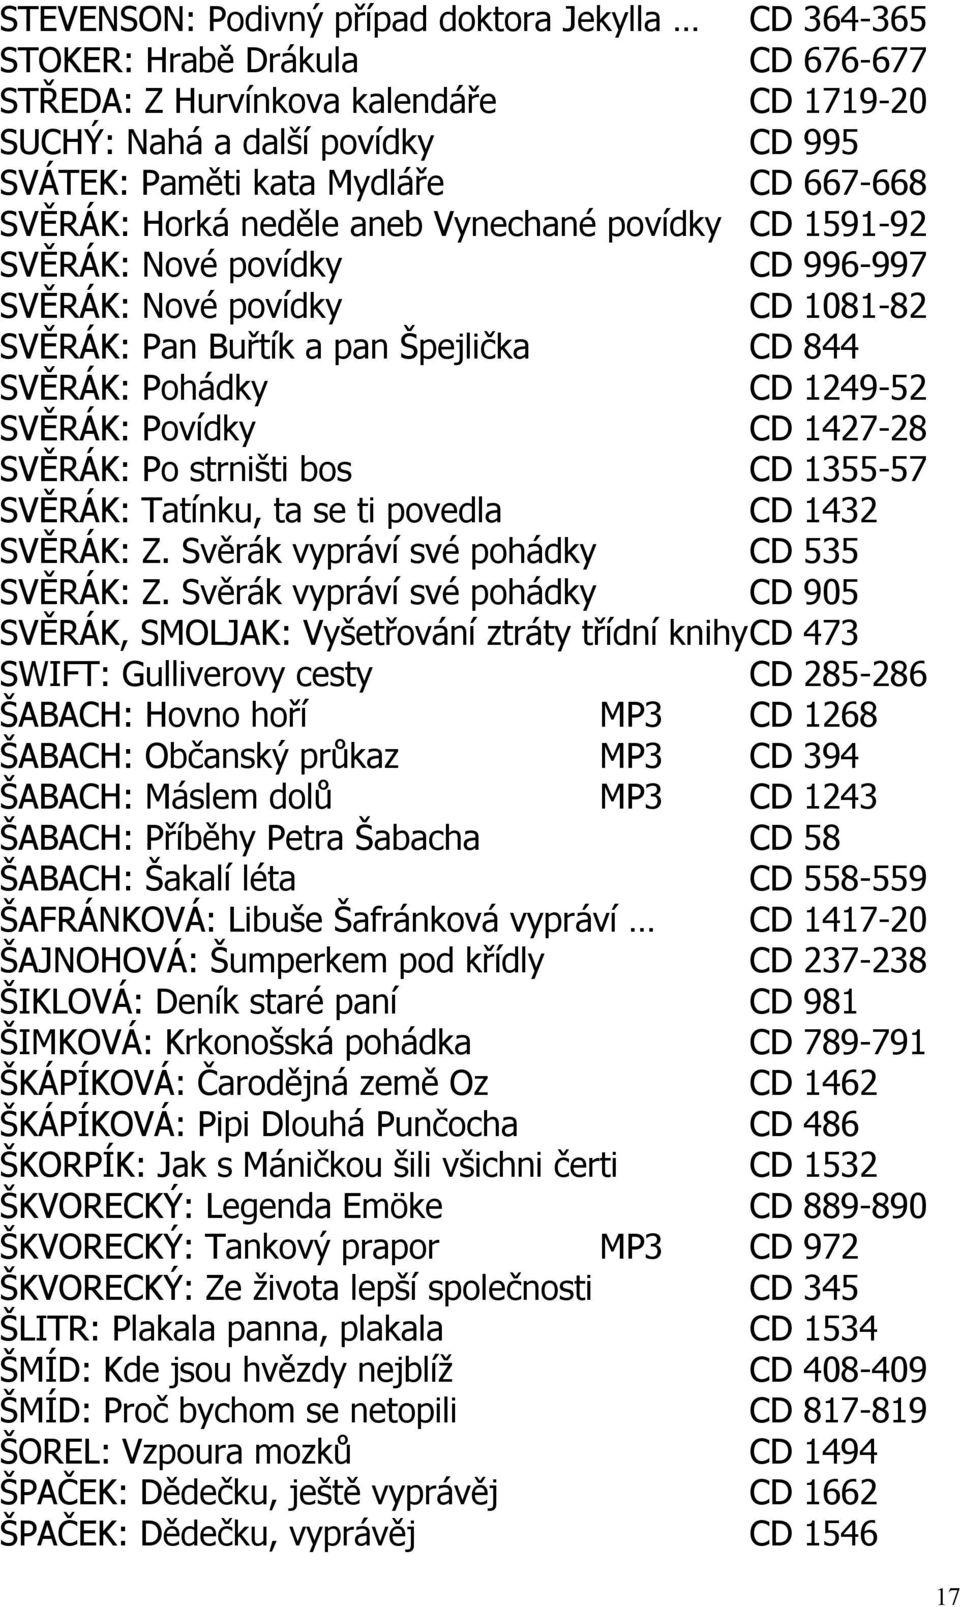 SVĚRÁK: Povídky CD 1427-28 SVĚRÁK: Po strništi bos CD 1355-57 SVĚRÁK: Tatínku, ta se ti povedla CD 1432 SVĚRÁK: Z. Svěrák vypráví své pohádky CD 535 SVĚRÁK: Z.